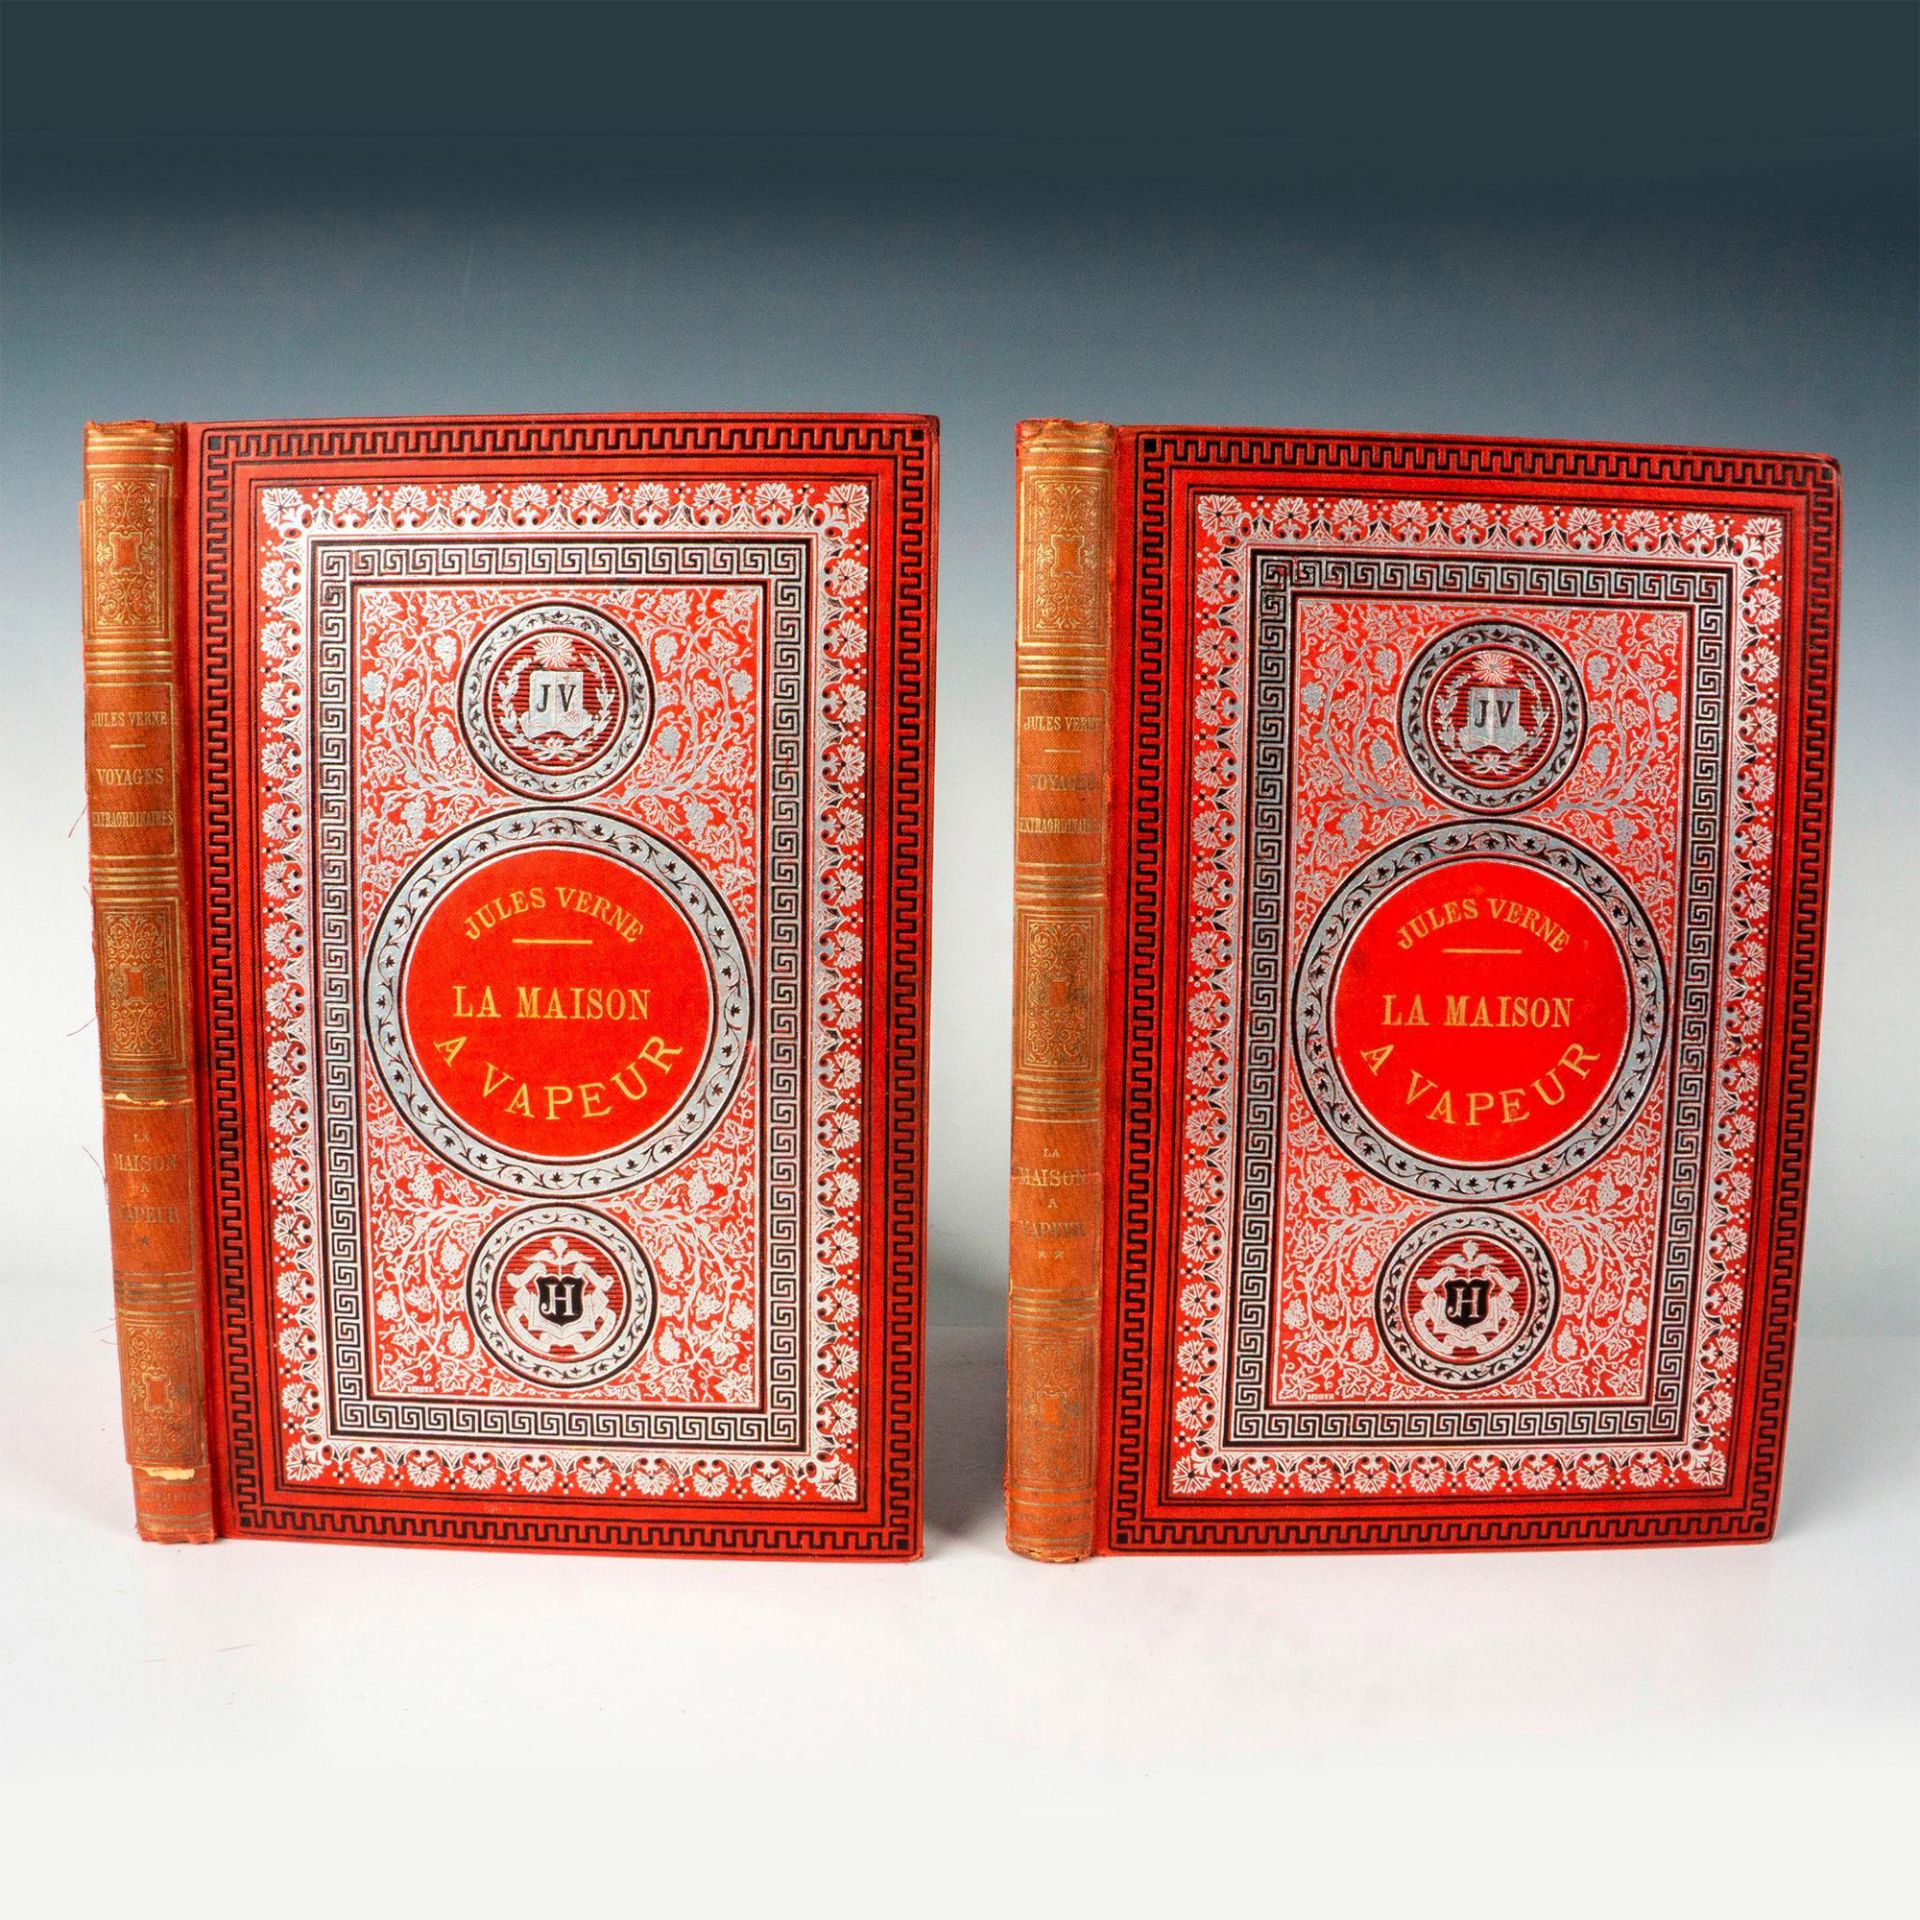 Jules Verne, 2 Vols. La Maison a Vapeur, Initiales Argentees